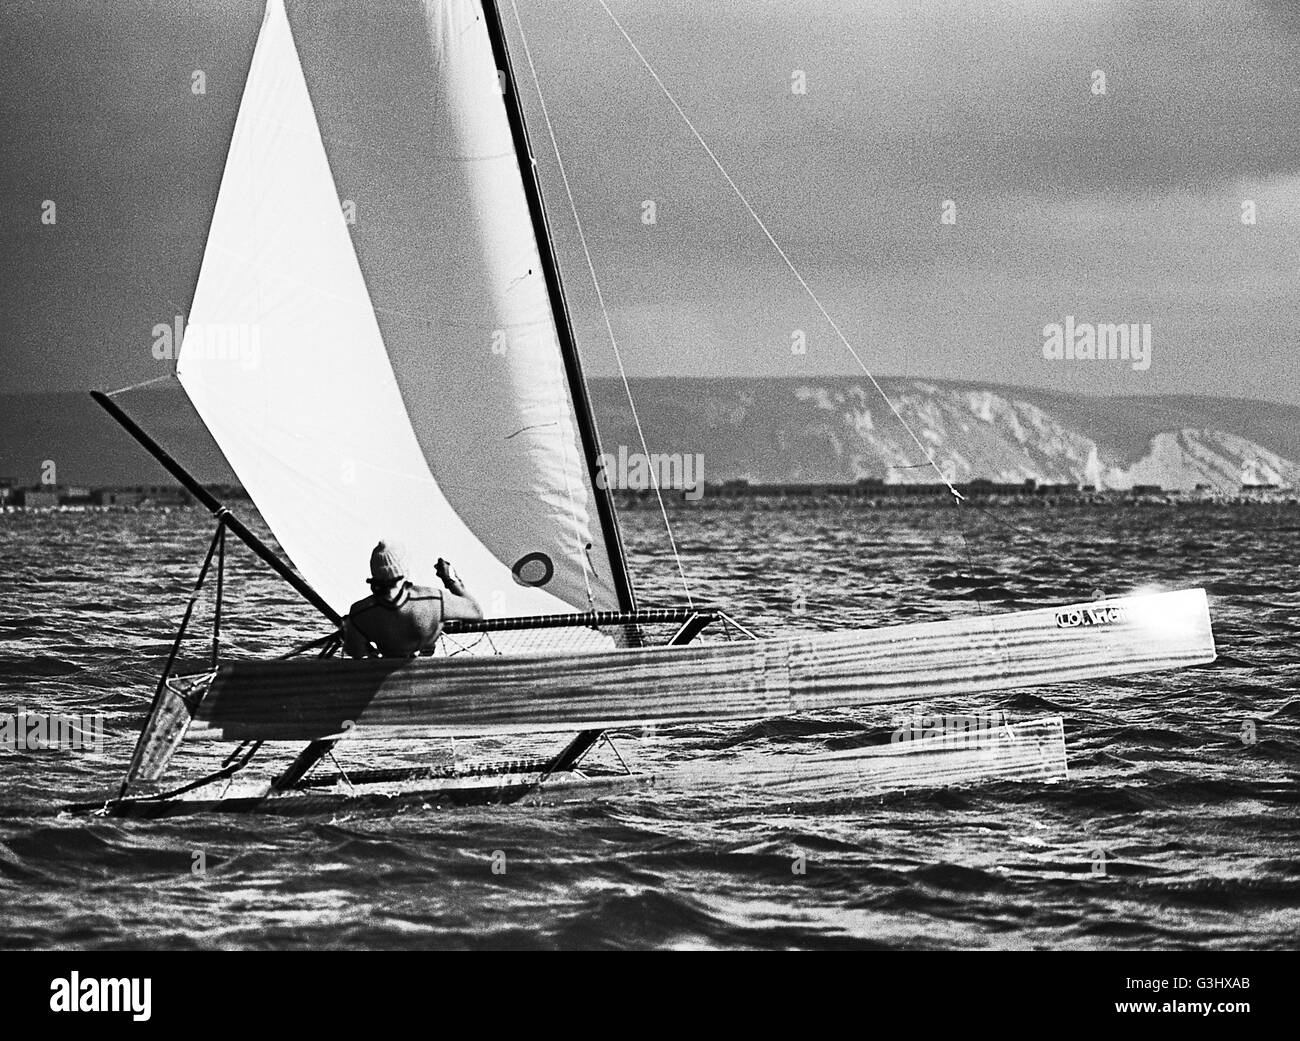 AJAXNETPHOTO. 29ª OCT,1976. PORTLAND, Inglaterra. - Velocidad de Weymouth semana - Catamarán ARTEMEDE EN VELOCIDAD EN PORTLAND Harbour. Foto:Jonathan EASTLAND/AJAX REF:7629101 17192 Foto de stock